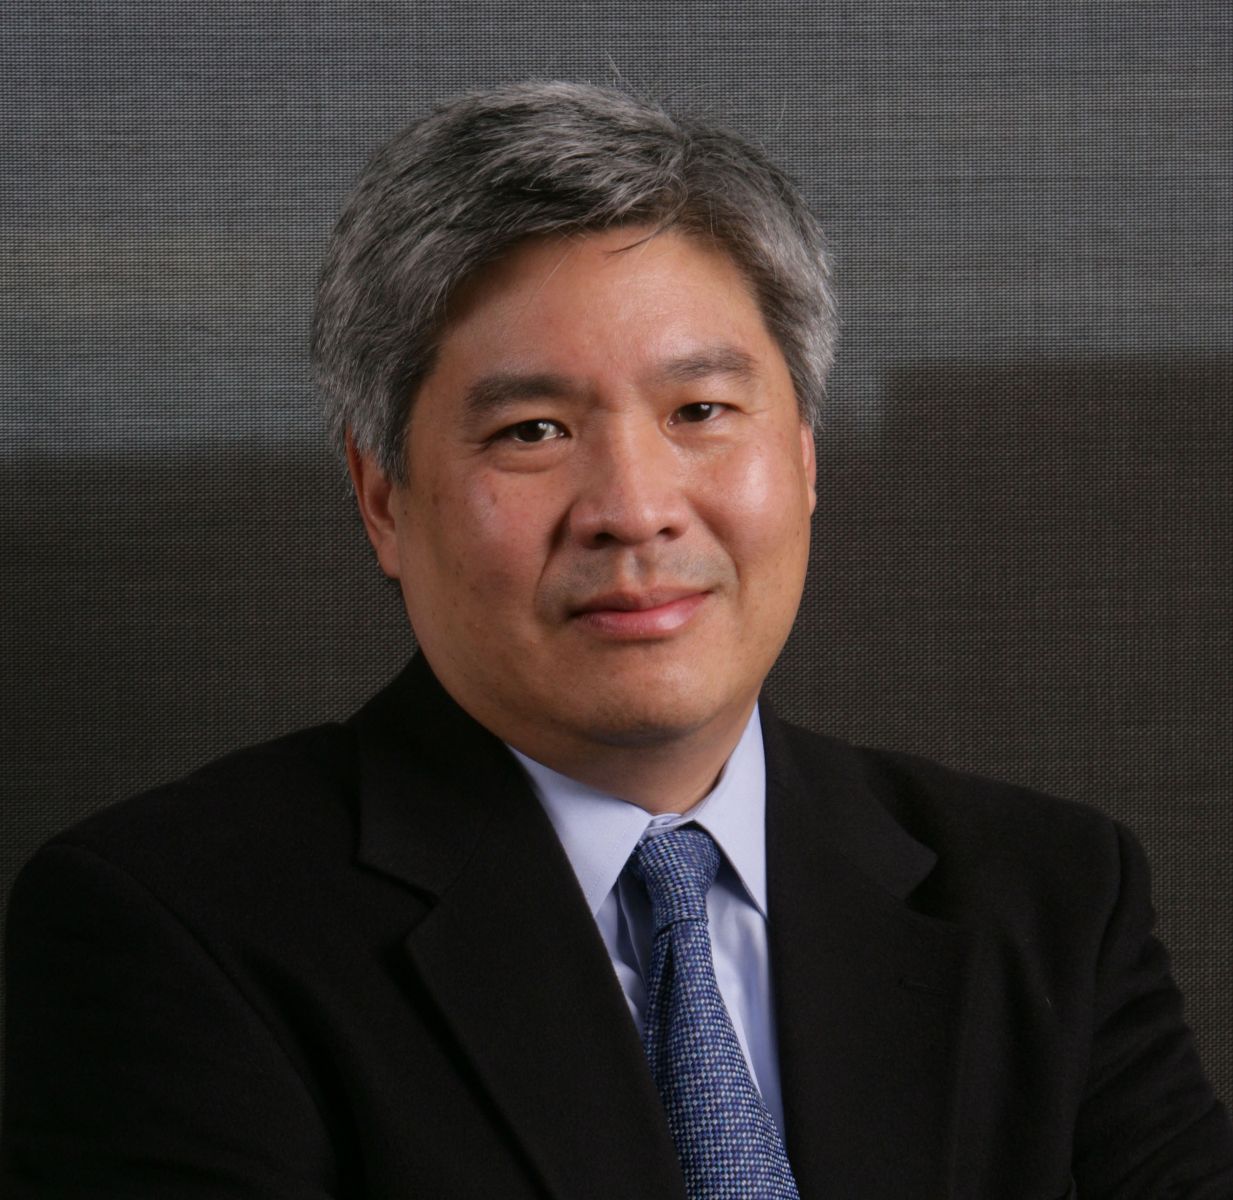 Douglas Yee, MD